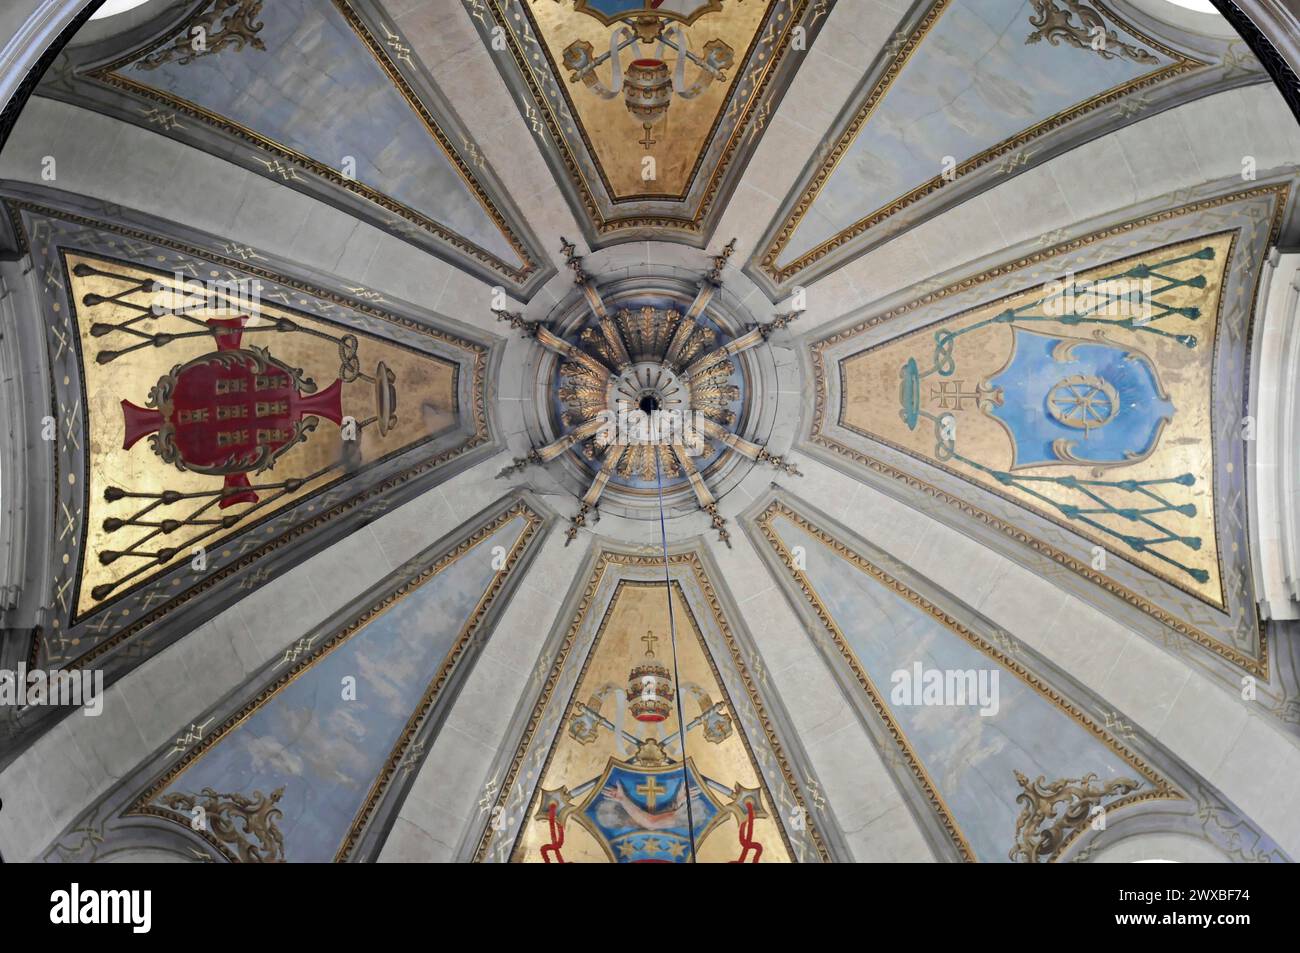 Dôme de l'église de pèlerinage Bom Jesus, lieu de pèlerinage, Braga, vue d'une voûte d'église peinte artistiquement avec des armoiries et des éléments dorés Banque D'Images